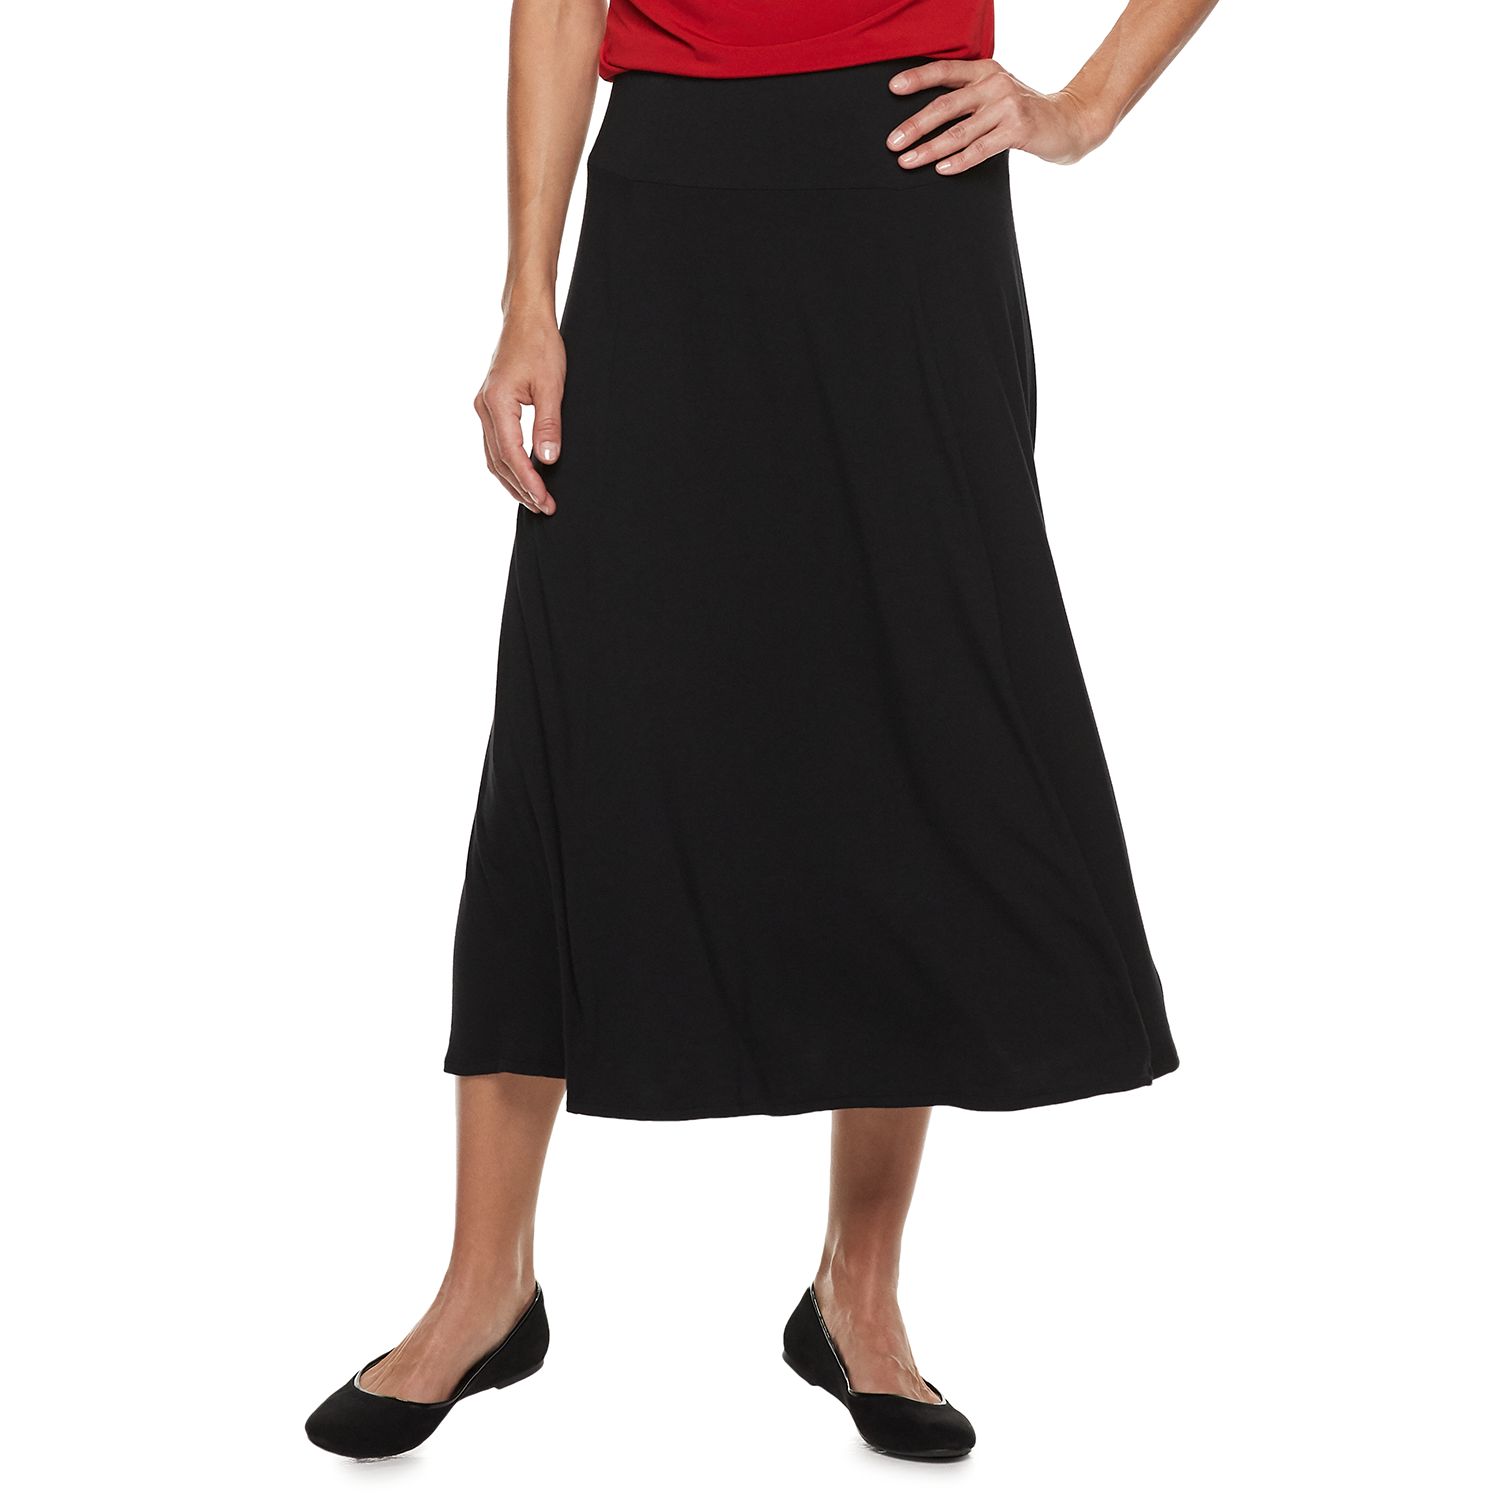 long black skirt kohls